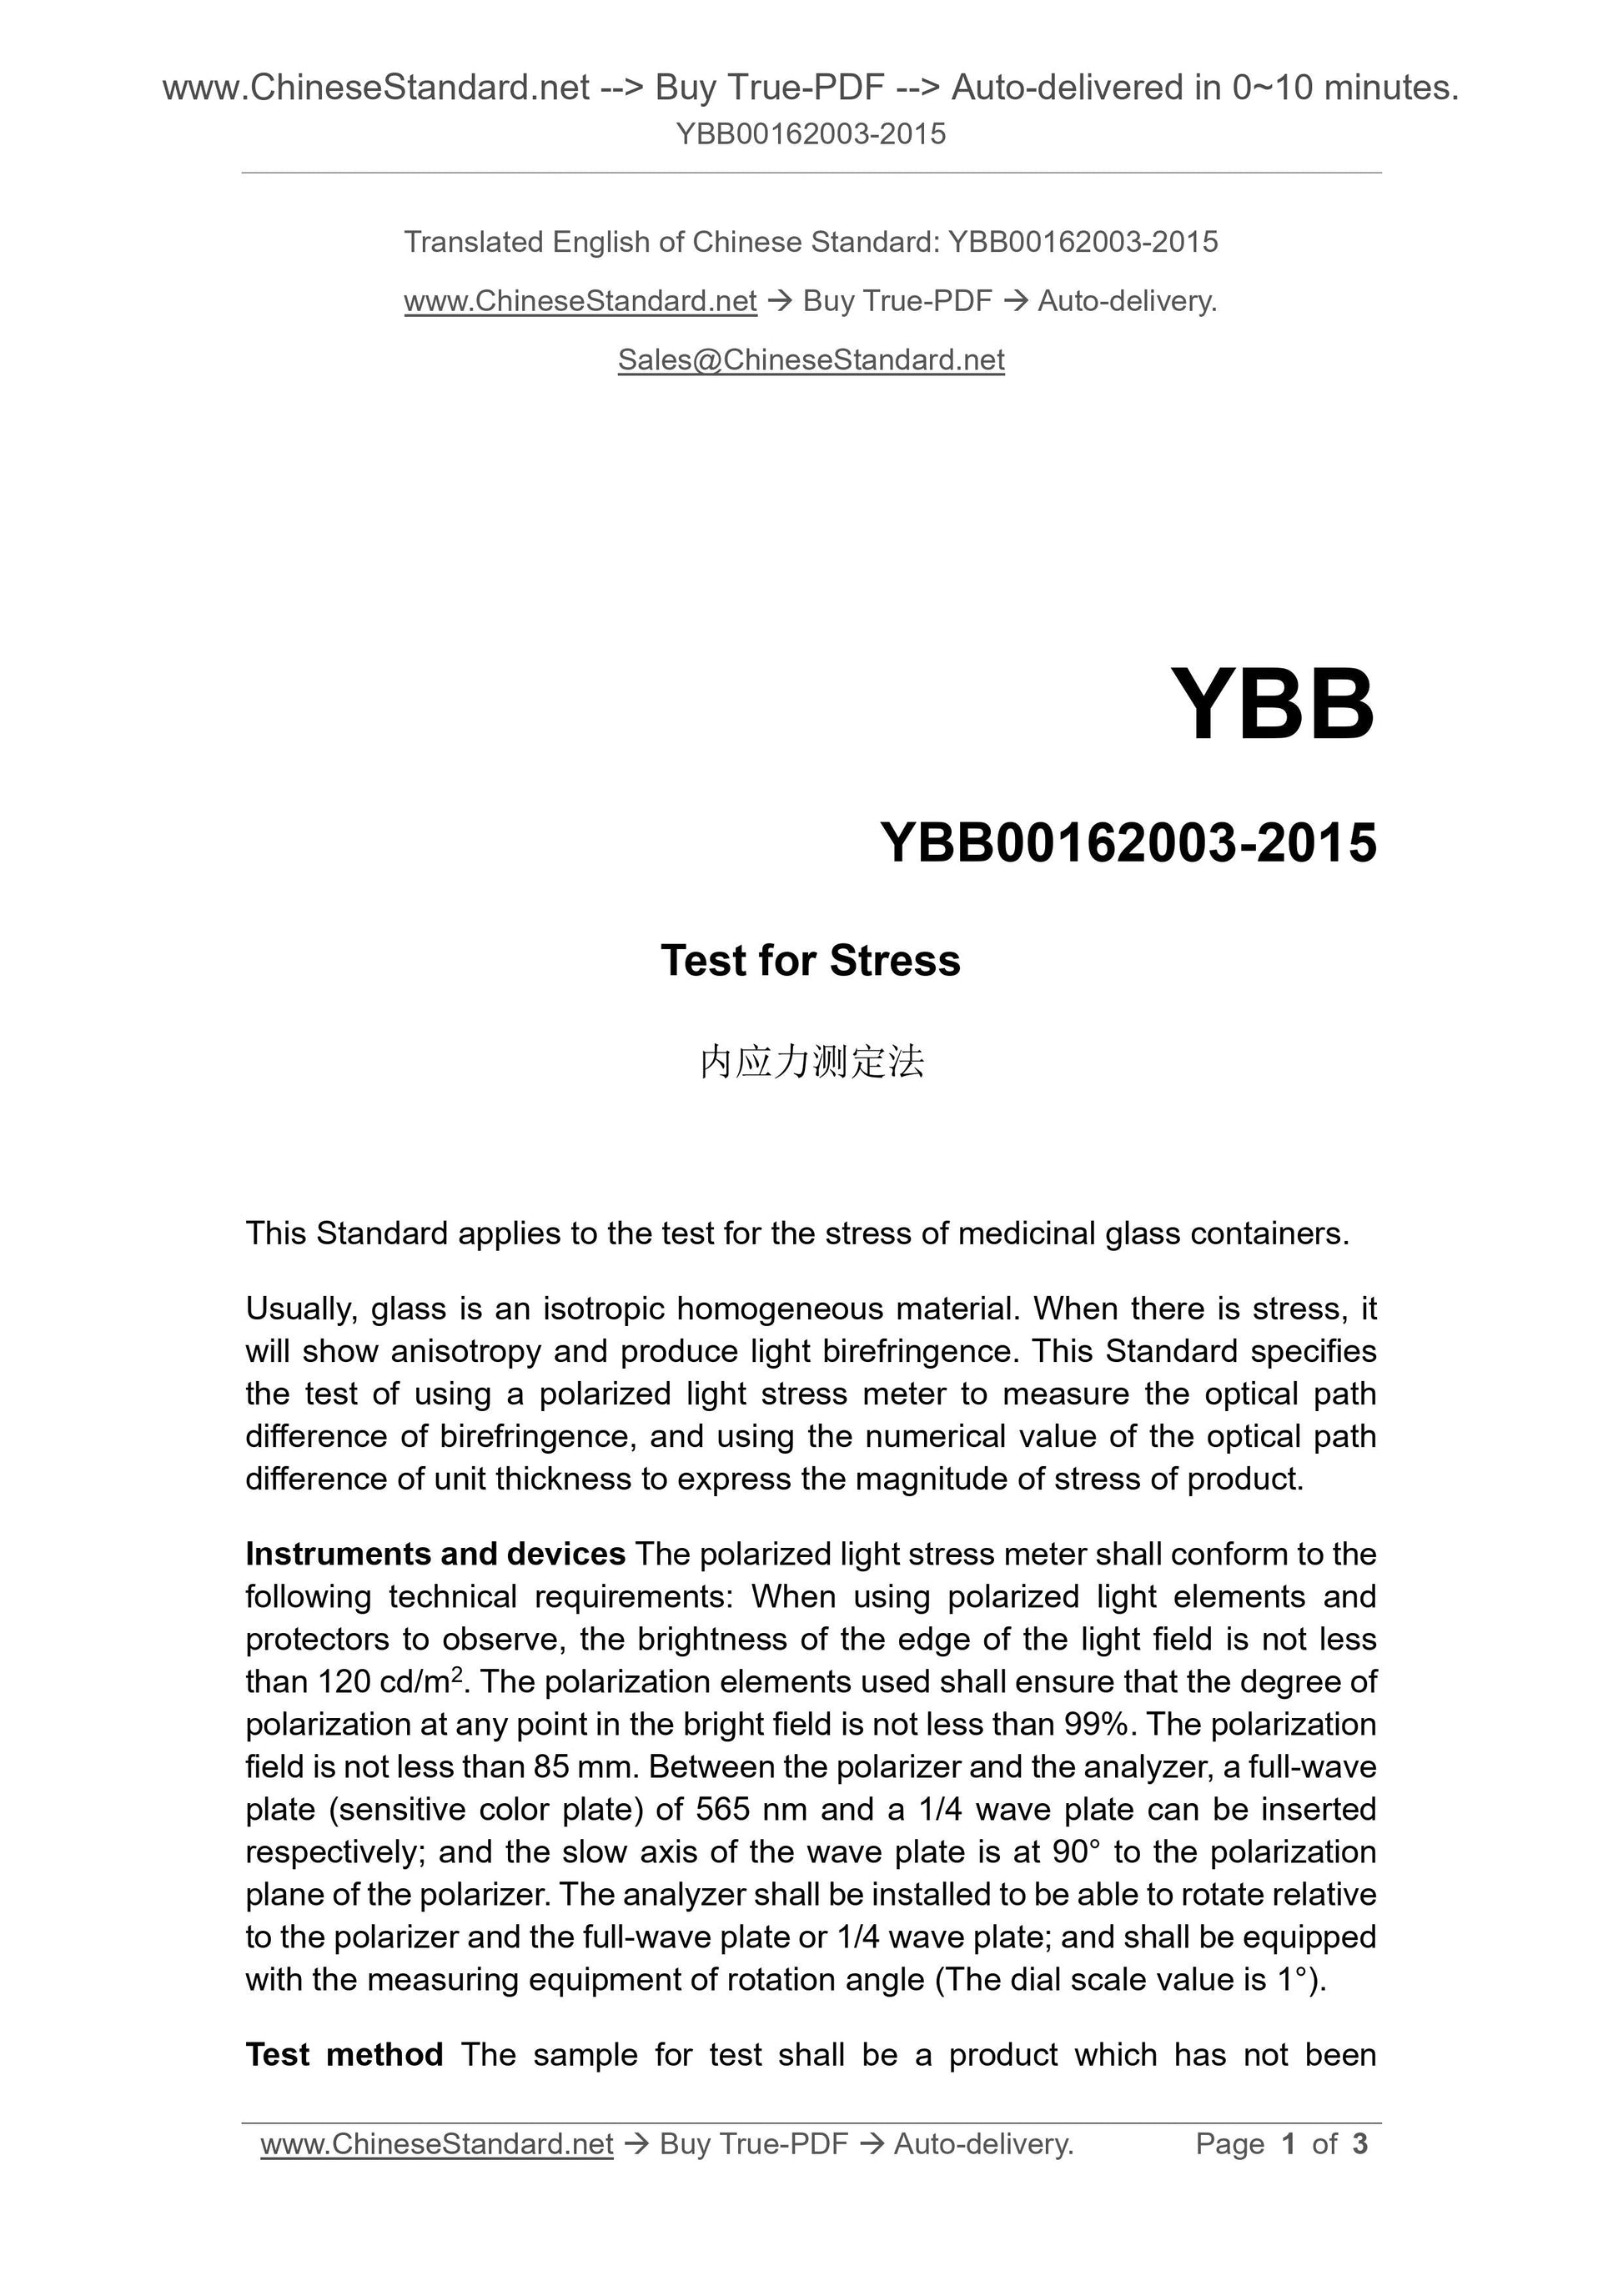 YBB 00162003-2015 Page 1